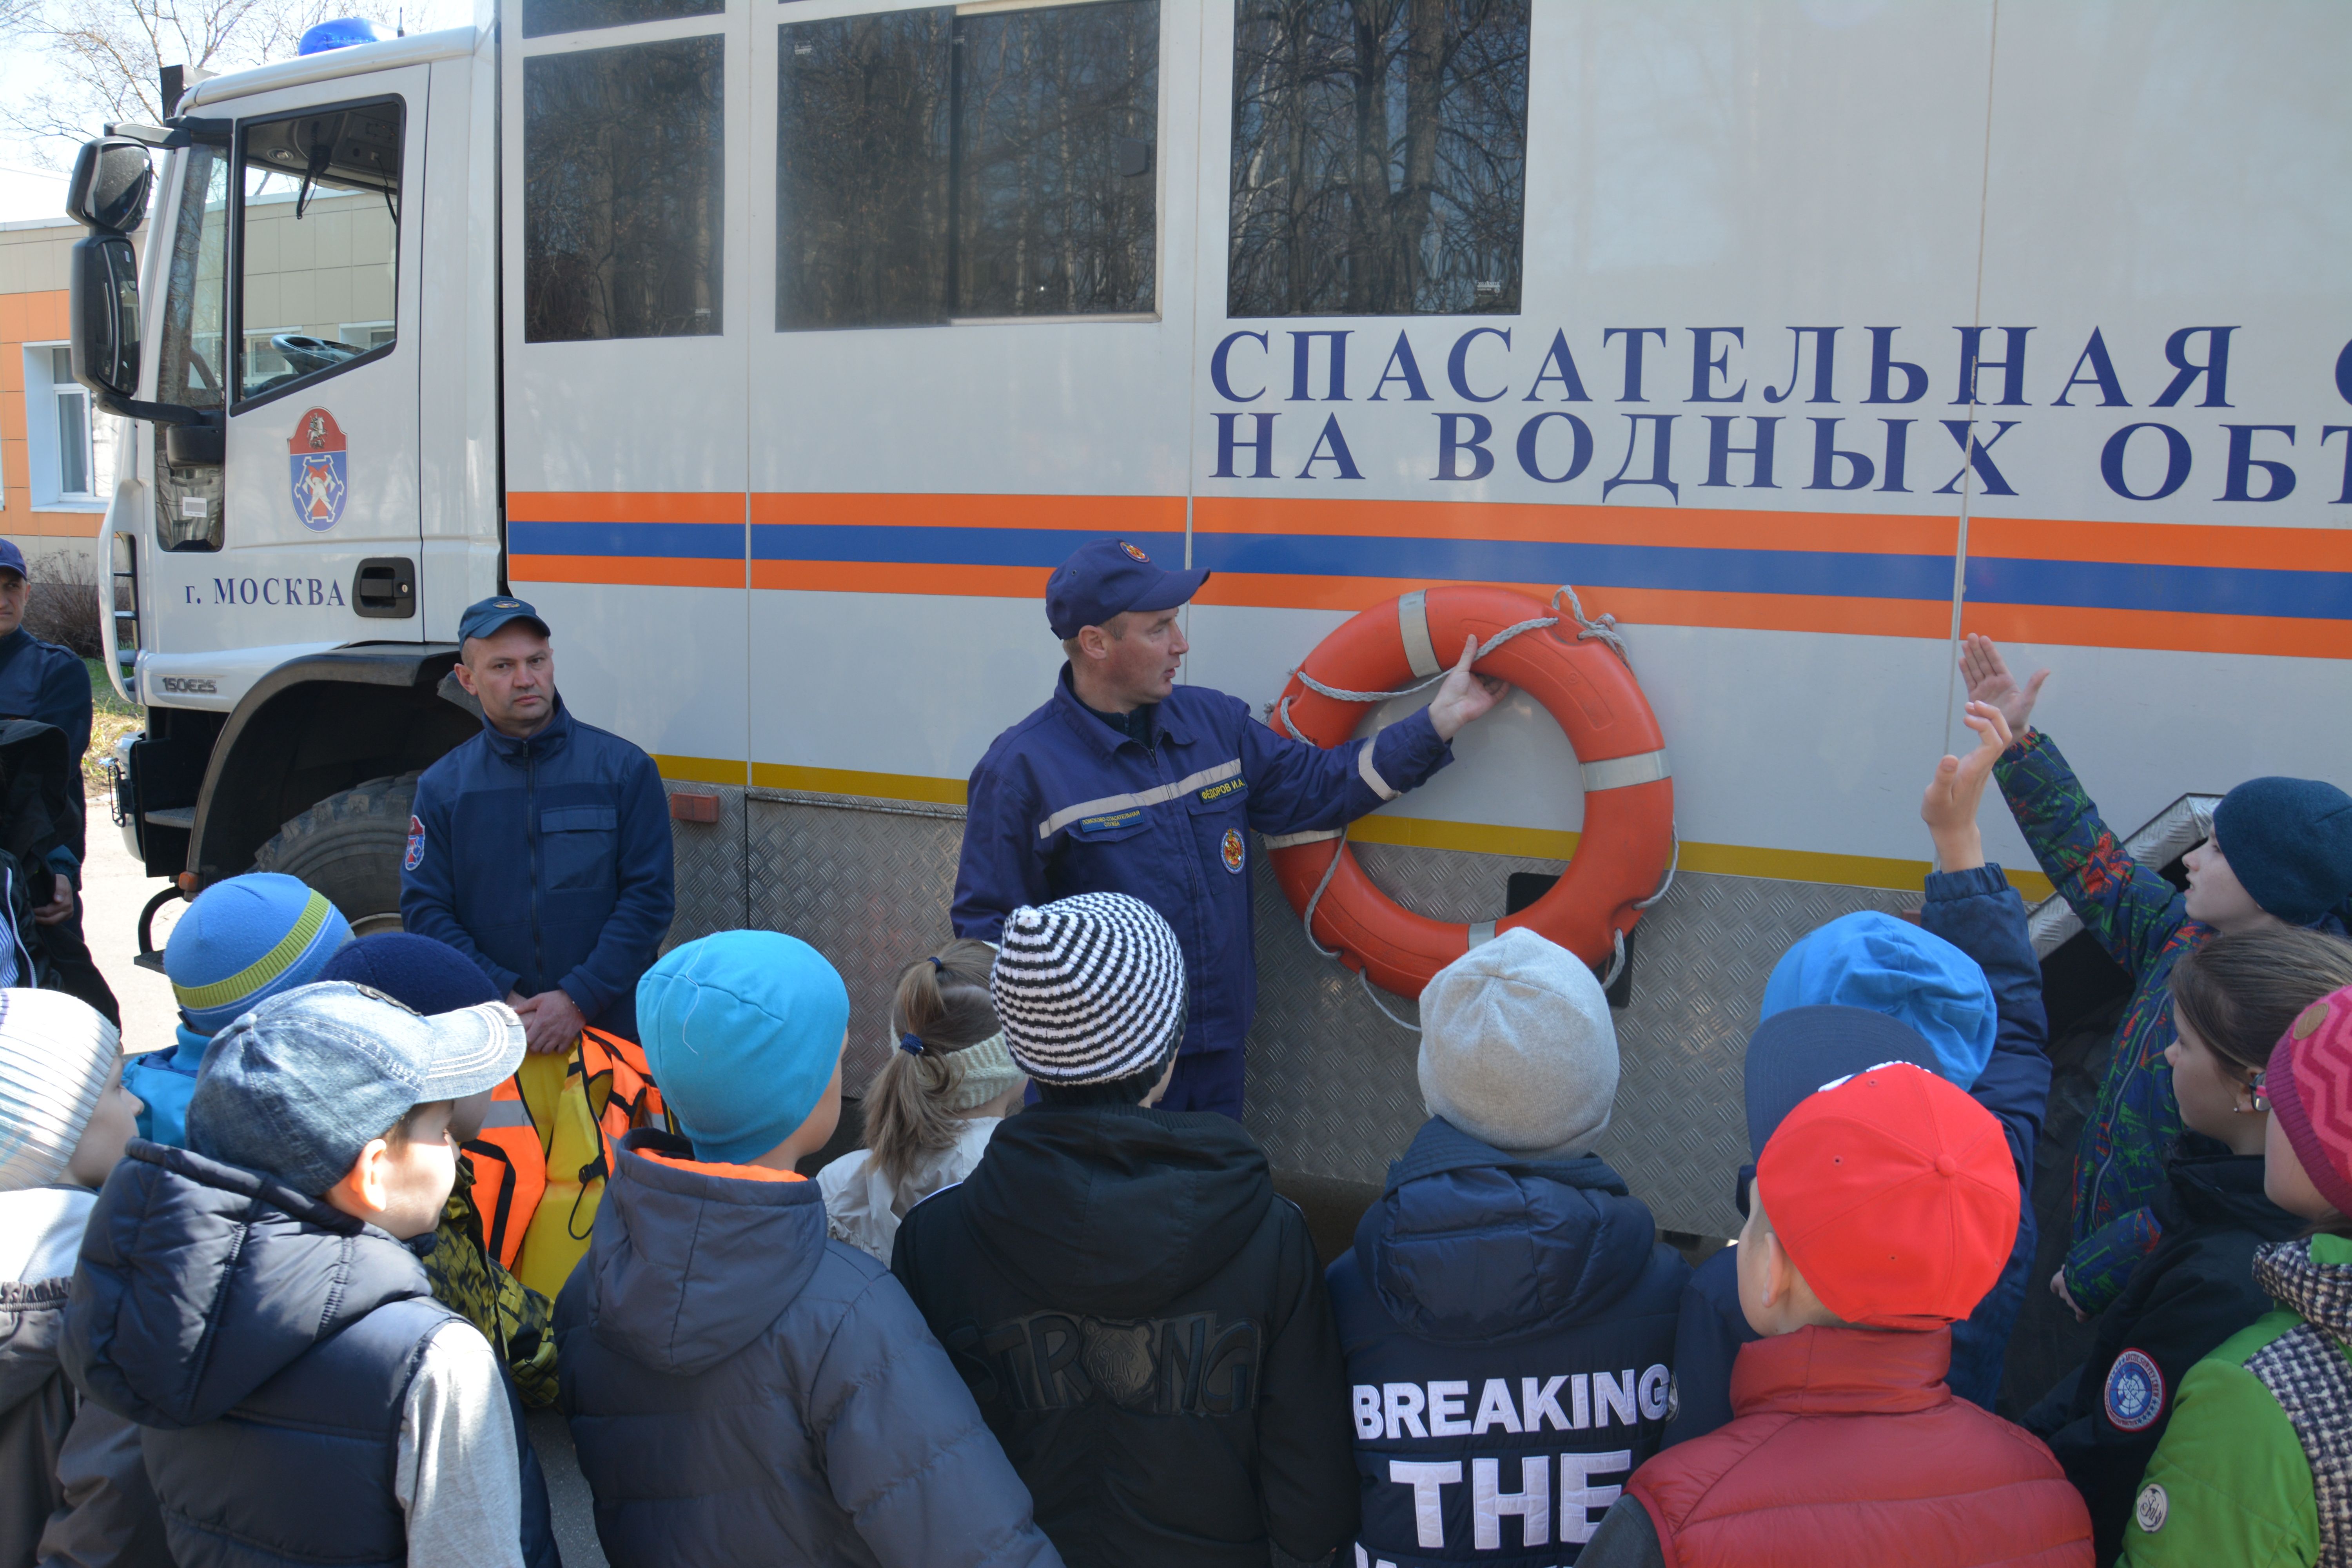 О профессии спасатель и пожарный узнали московские школьники